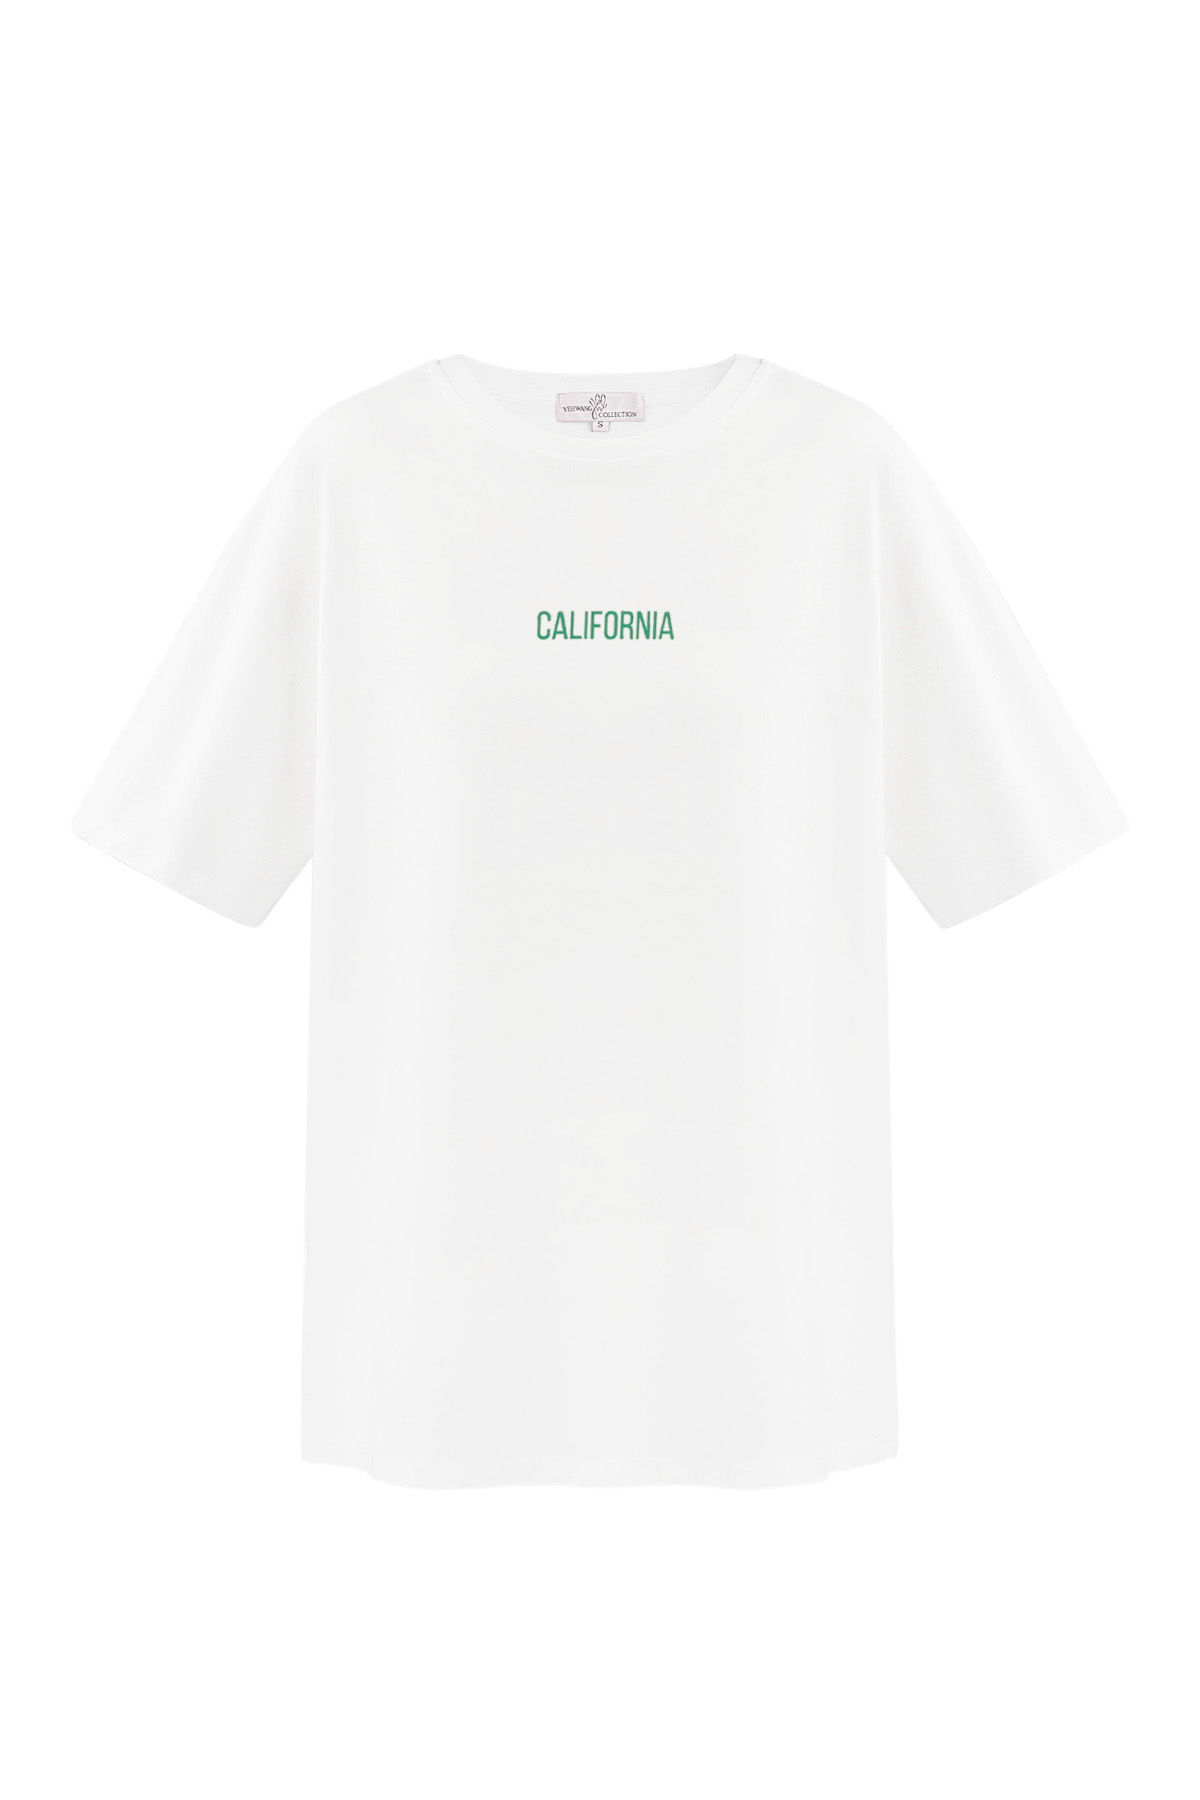 Kalifornien T-Shirt - weiß h5 